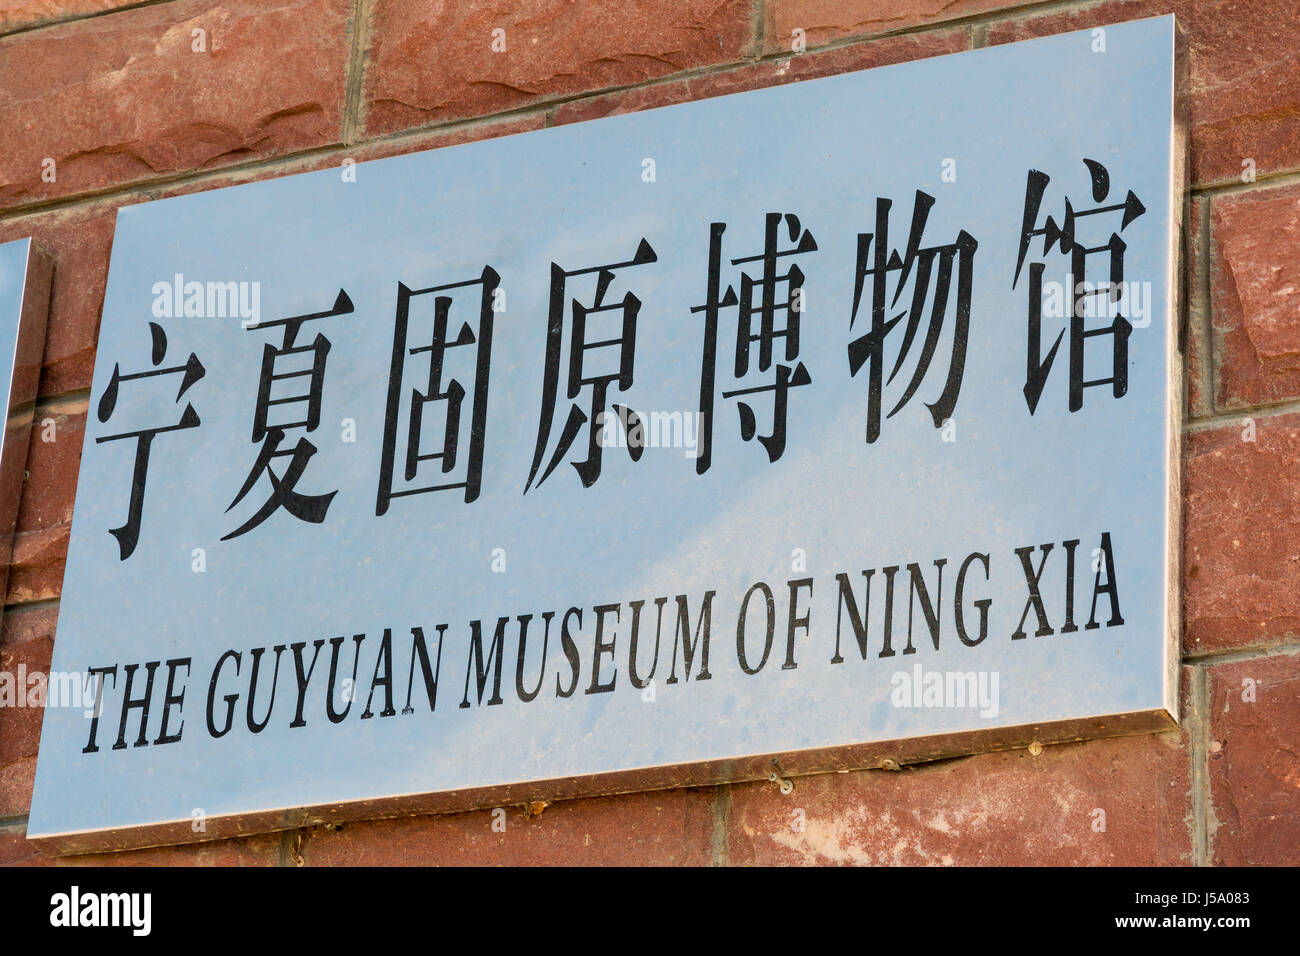 Guyuan Museum of Ningxia, China Stock Photo